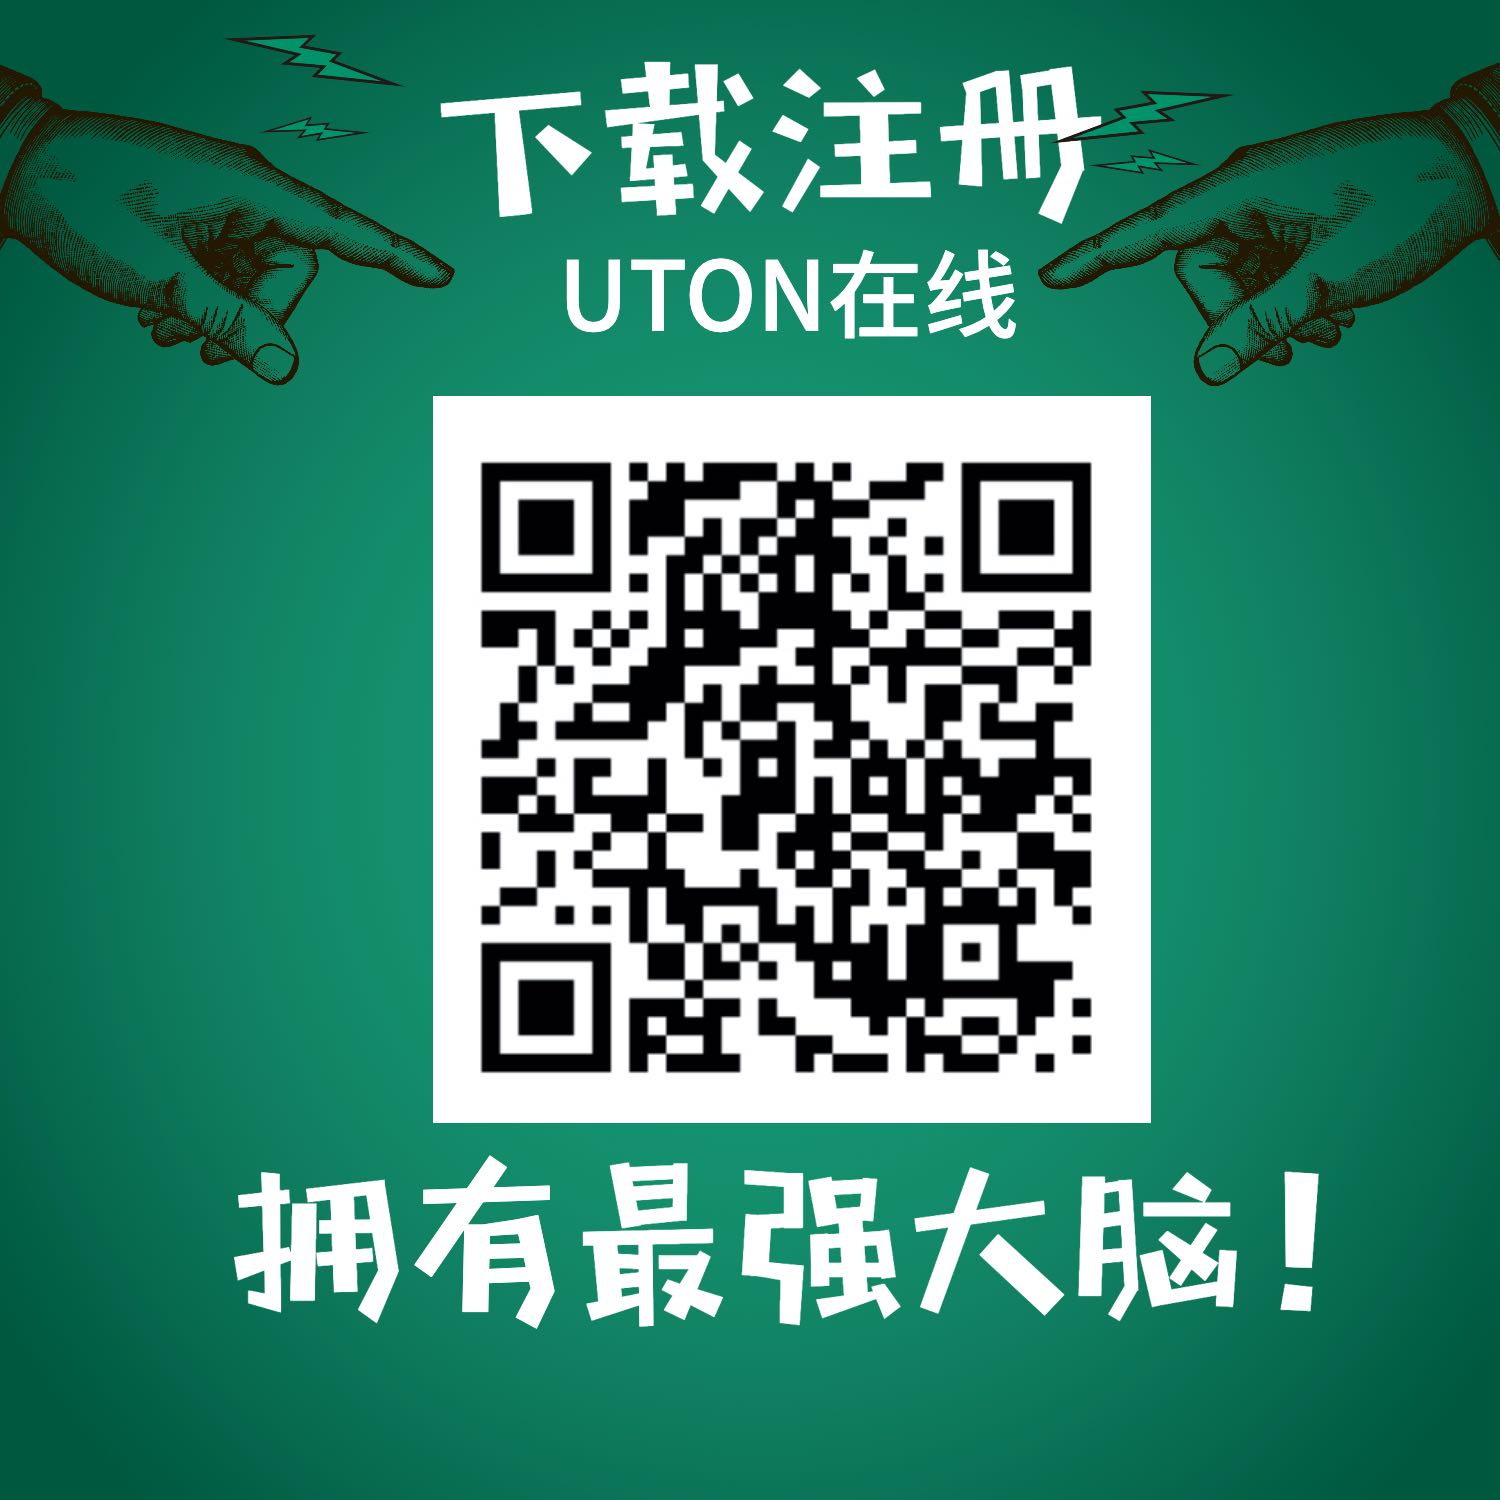 UTON在线下载.jpg